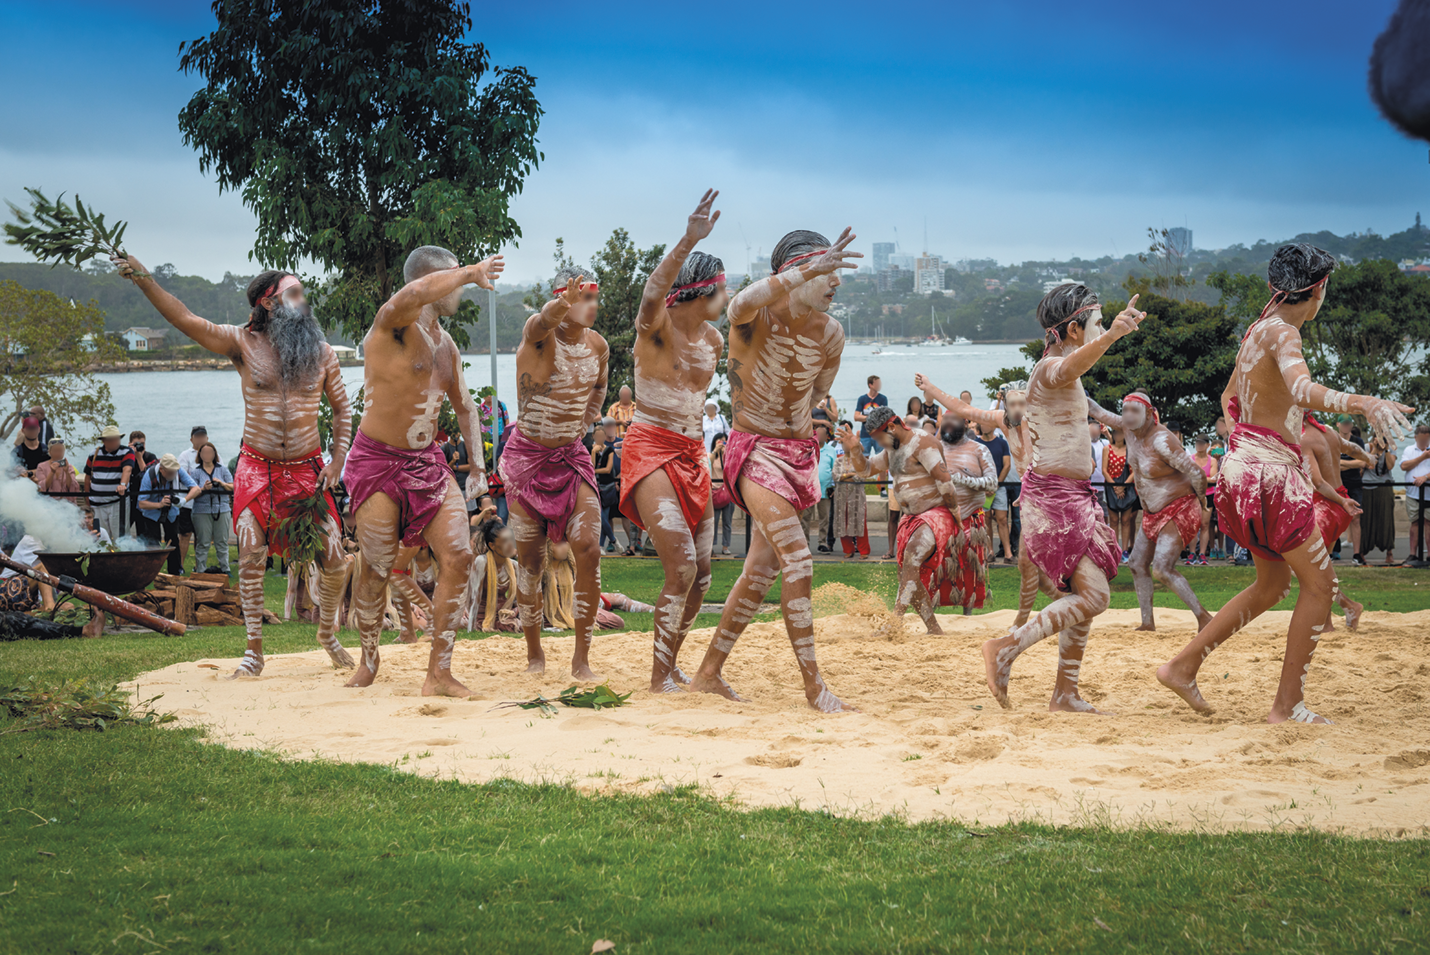 Fotografia. Grupo de pessoas com tecidos vermelhos e pinturas corporais espalhadas pelo corpo, dançando em uma área de areia cercada por grama. Ao redor, pessoas observando e árvores.